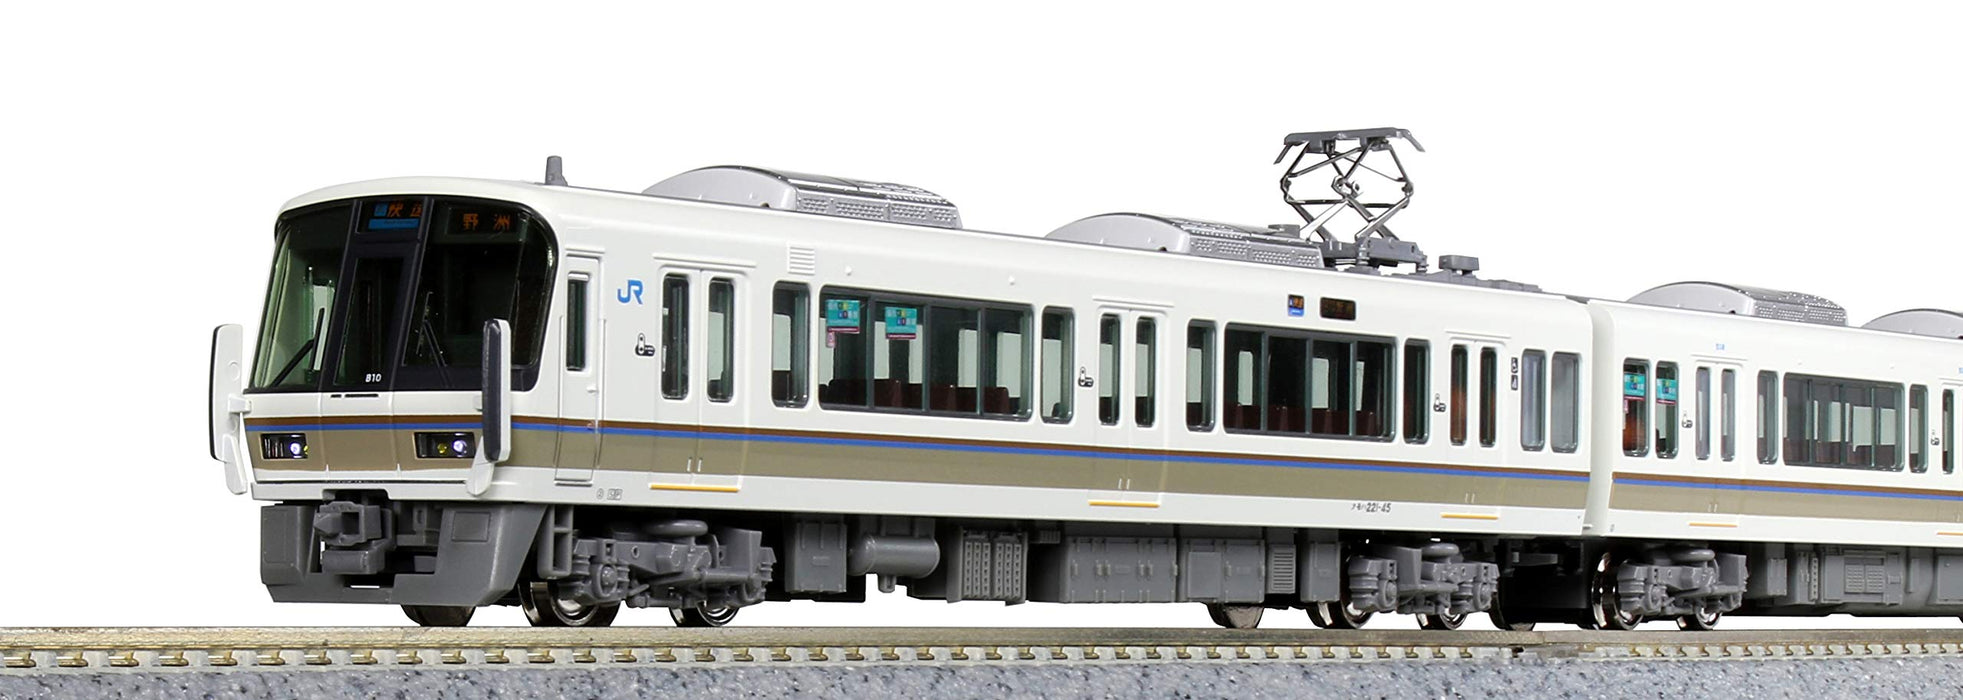 Kato Renewed 221 Series 10-1579 N Gauge Jr Kyoto/Kobe Line 6-Car Model Train Set